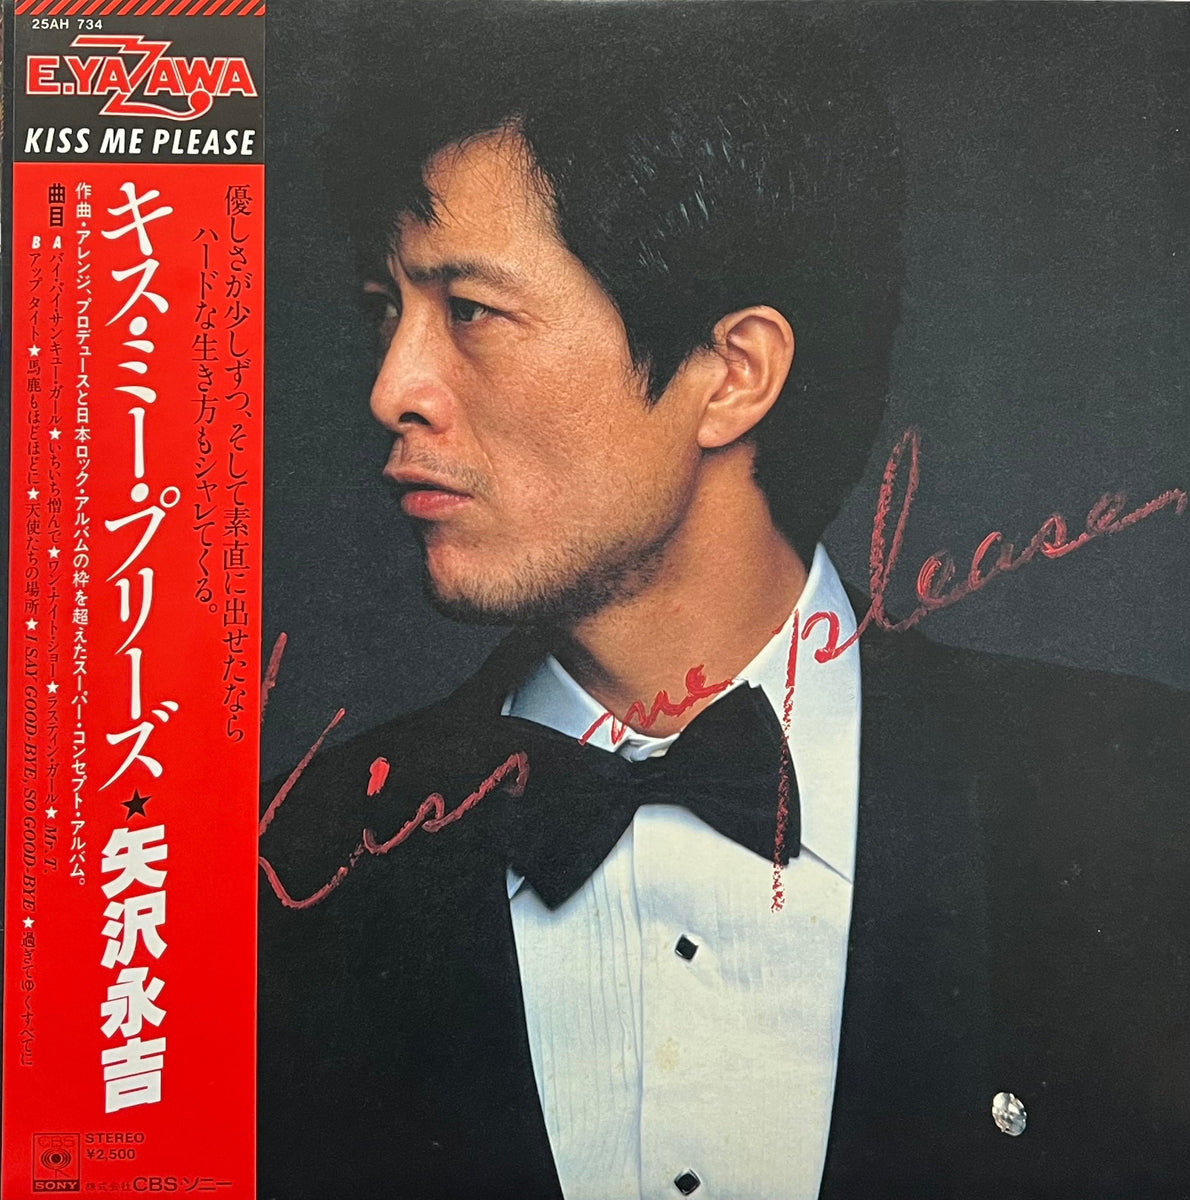 矢沢永吉 / Kiss Me Please (CBS/Sony, 25AH-734, LP) 帯付 – TICRO 